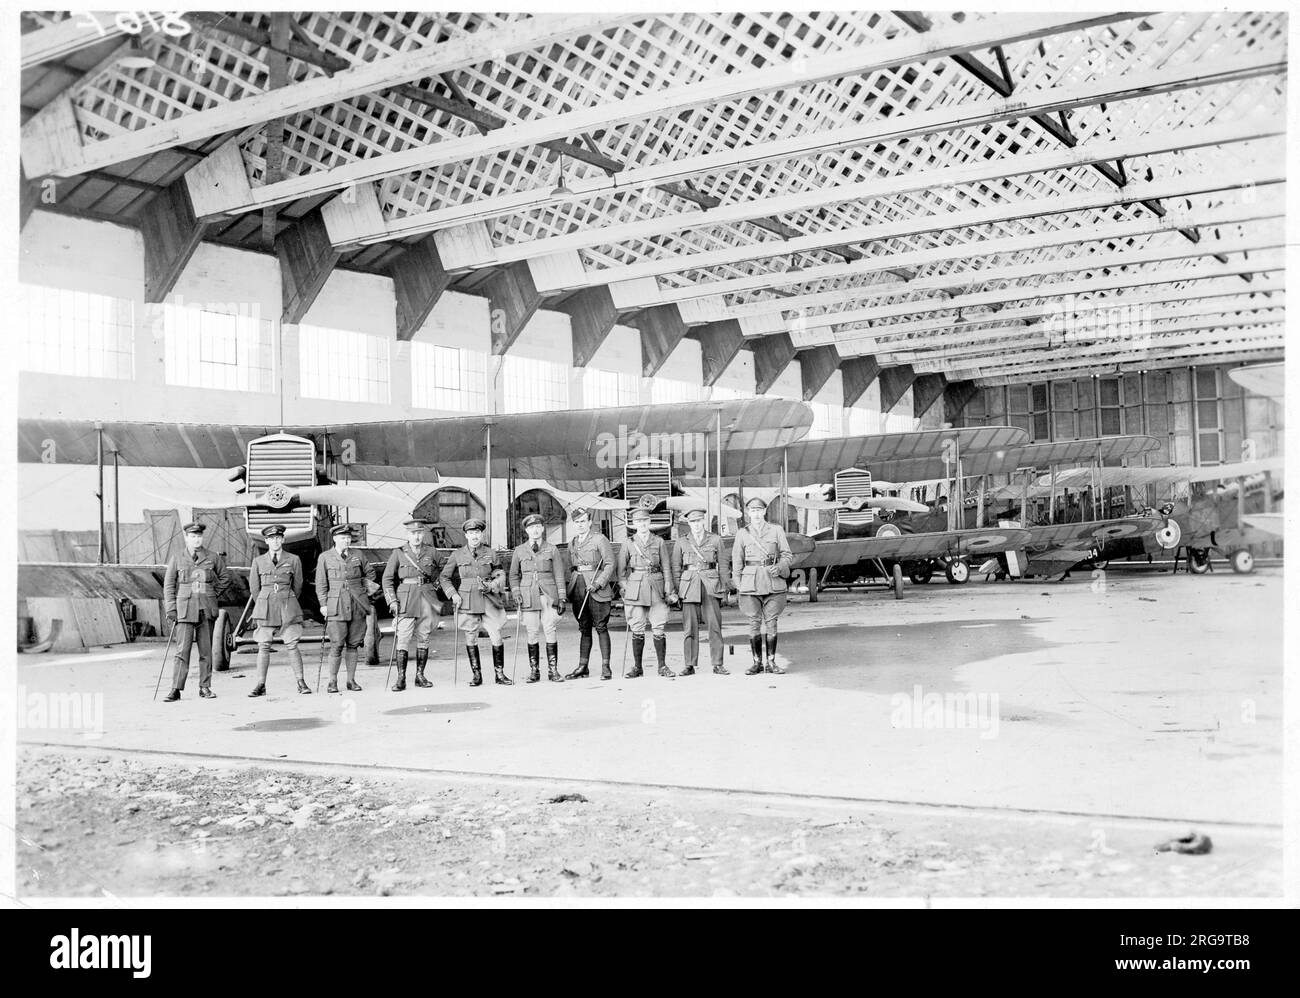 Forze aeree canadesi - gli uomini e le macchine assemblati di No. 2 Squadron forze aeree canadesi (1918-1920), probabilmente a Shoreham aerodromo (o, meno probabile, Upper Heyford). La Canadian Air Force (CAF) era un contingente di due squadroni dell'aeronautica canadese - un combattente e un bombardiere - autorizzati dal Ministero dell'aviazione britannico nell'agosto 1918 durante la fine della prima guerra mondiale. L'unità era indipendente dalla Canadian Expeditionary Force e dalla Royal Air Force (RAF). No.2 Squadrone della forza aerea canadese era equipaggiato con Airco DH.9A bombardieri di giorno ed era attivo durante la breve vita del C. Foto Stock